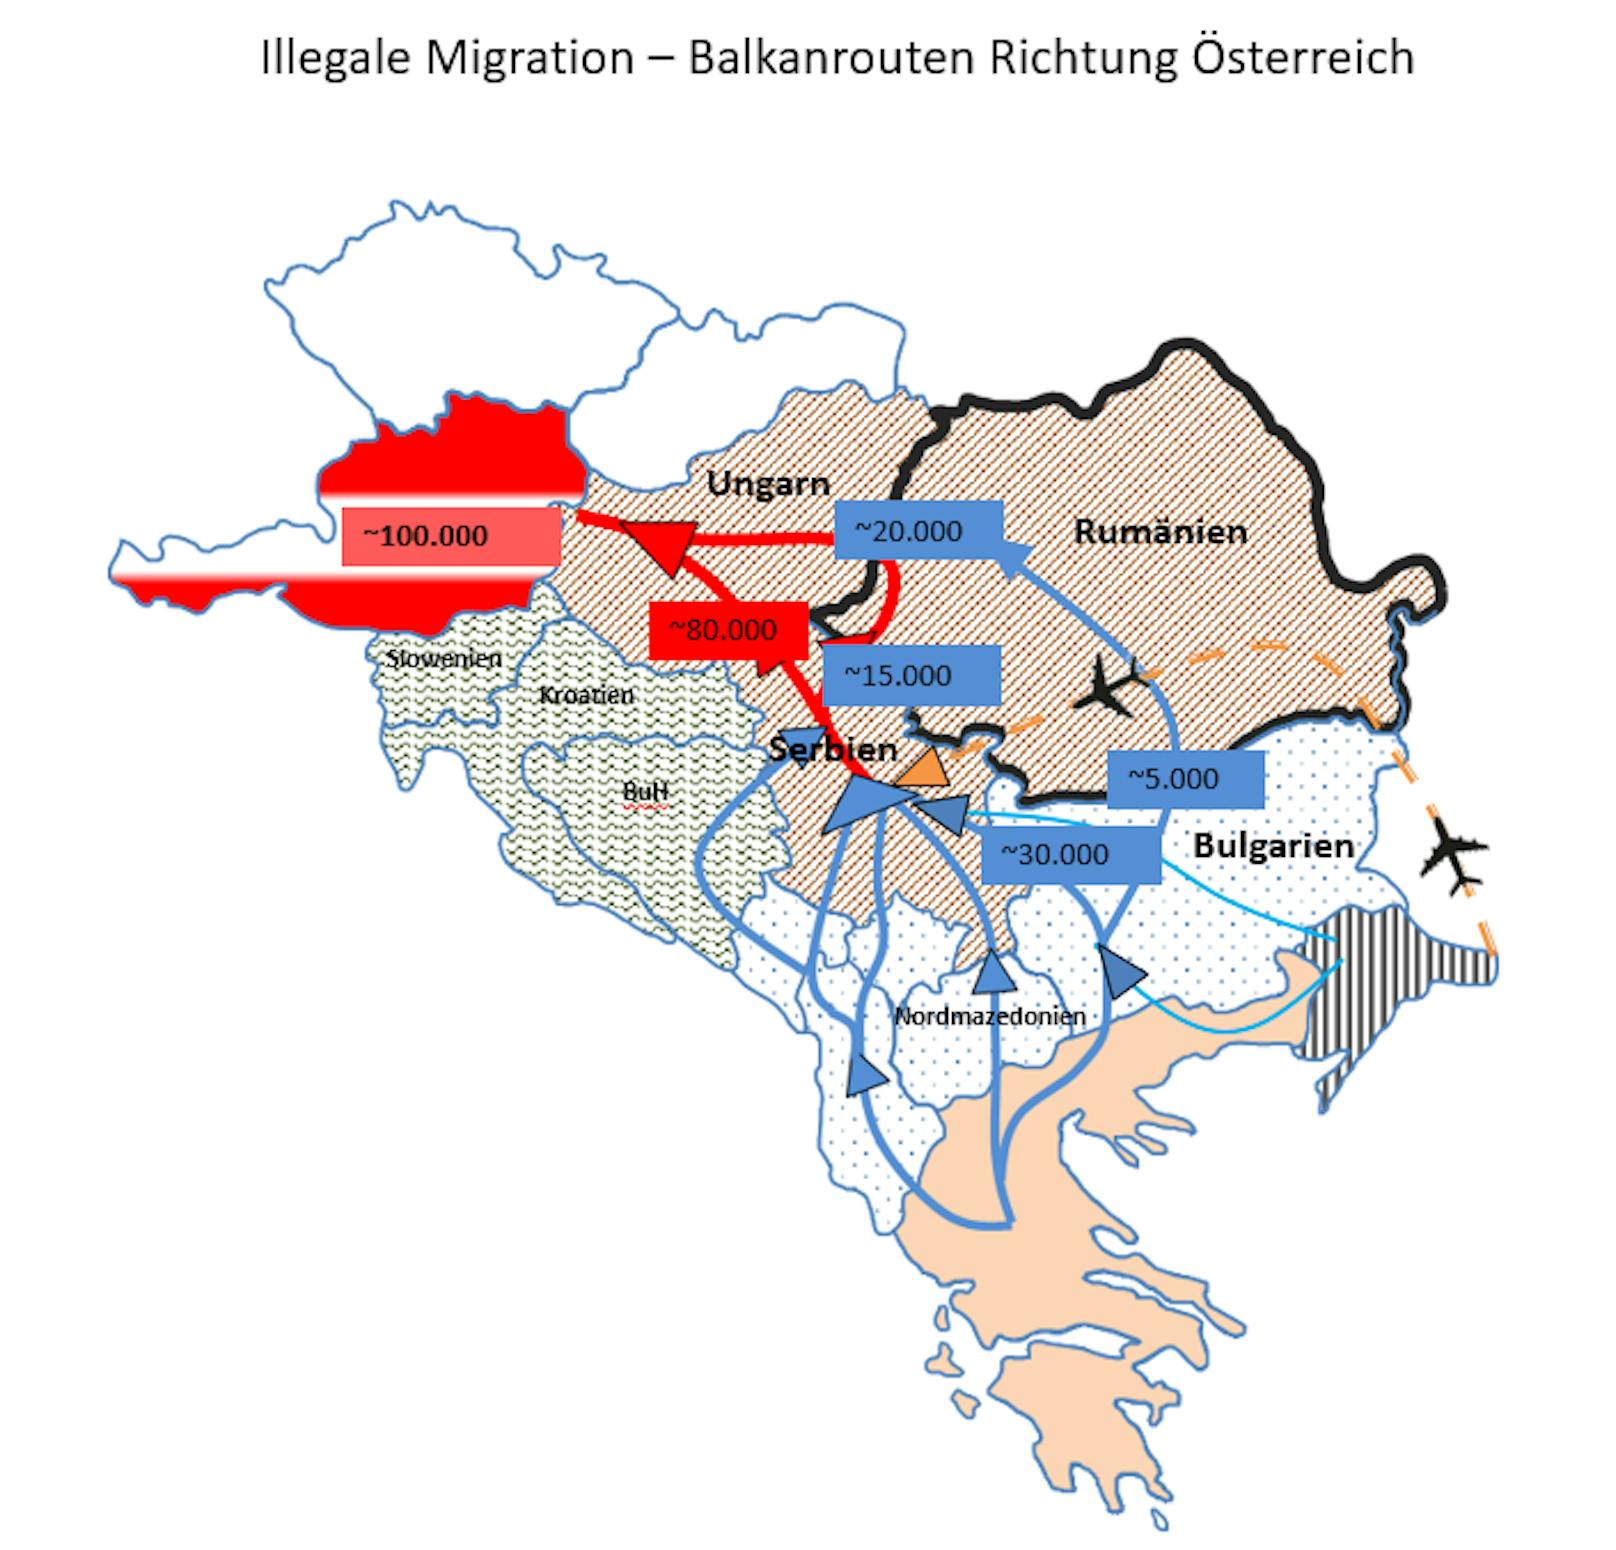 Eine vom Bundeskanzleramt zur Verfügung gestellte Karte soll die illegale Migration nach Österreich nachzeichnen. 